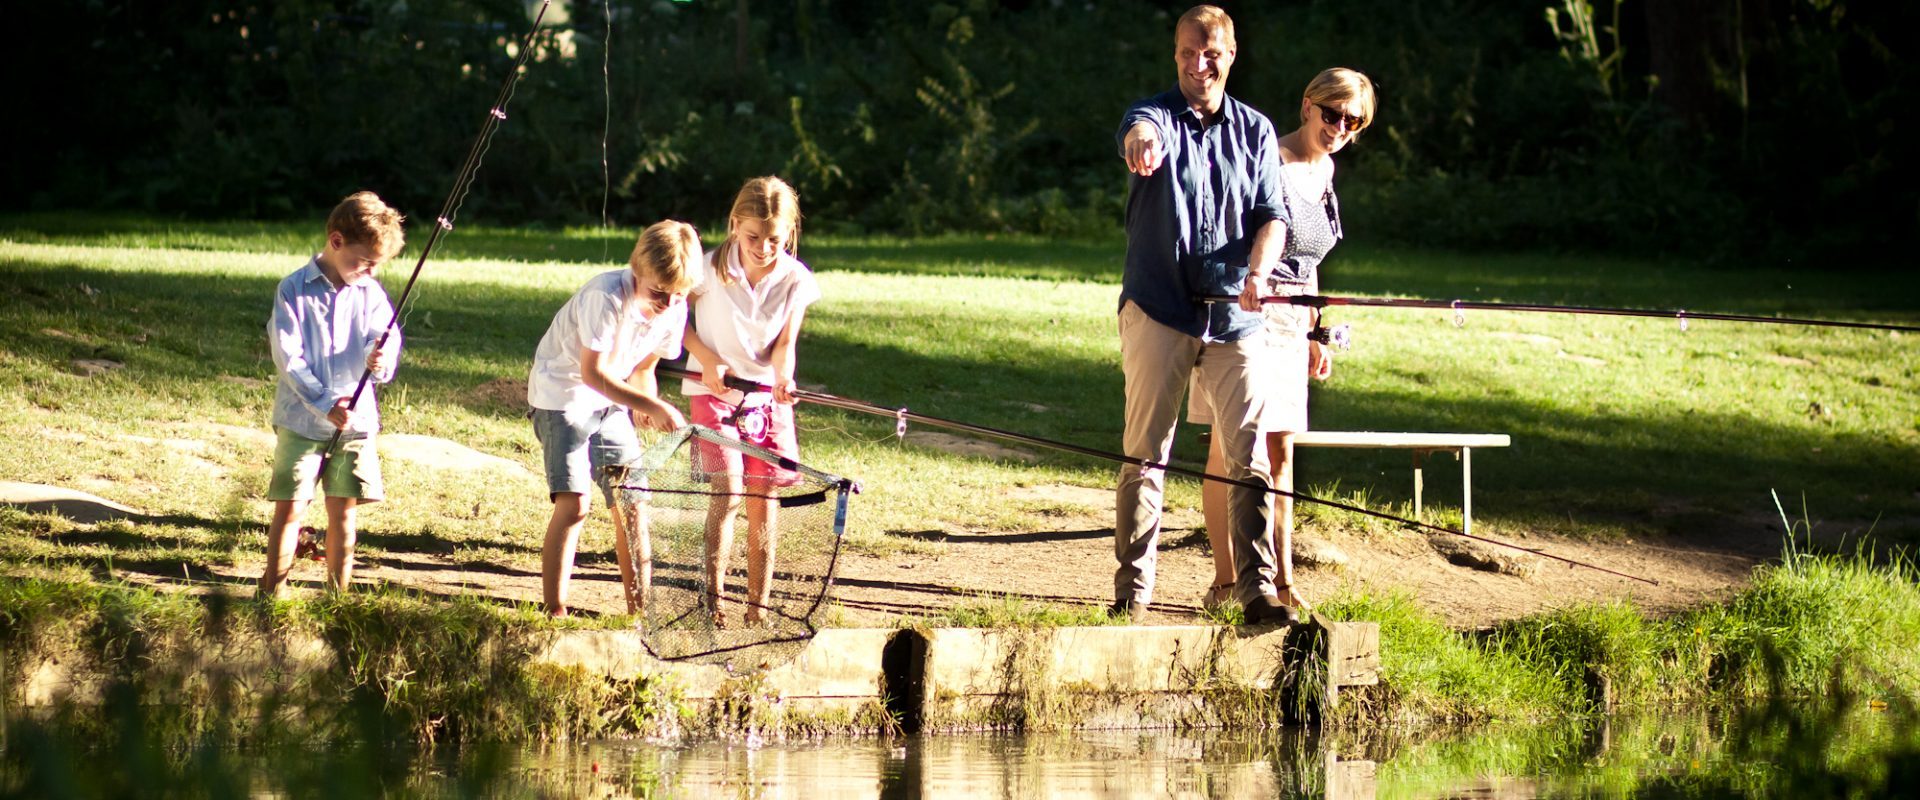 Pisciculture De Monchel :Pêche à la truite en étang réservé en famille